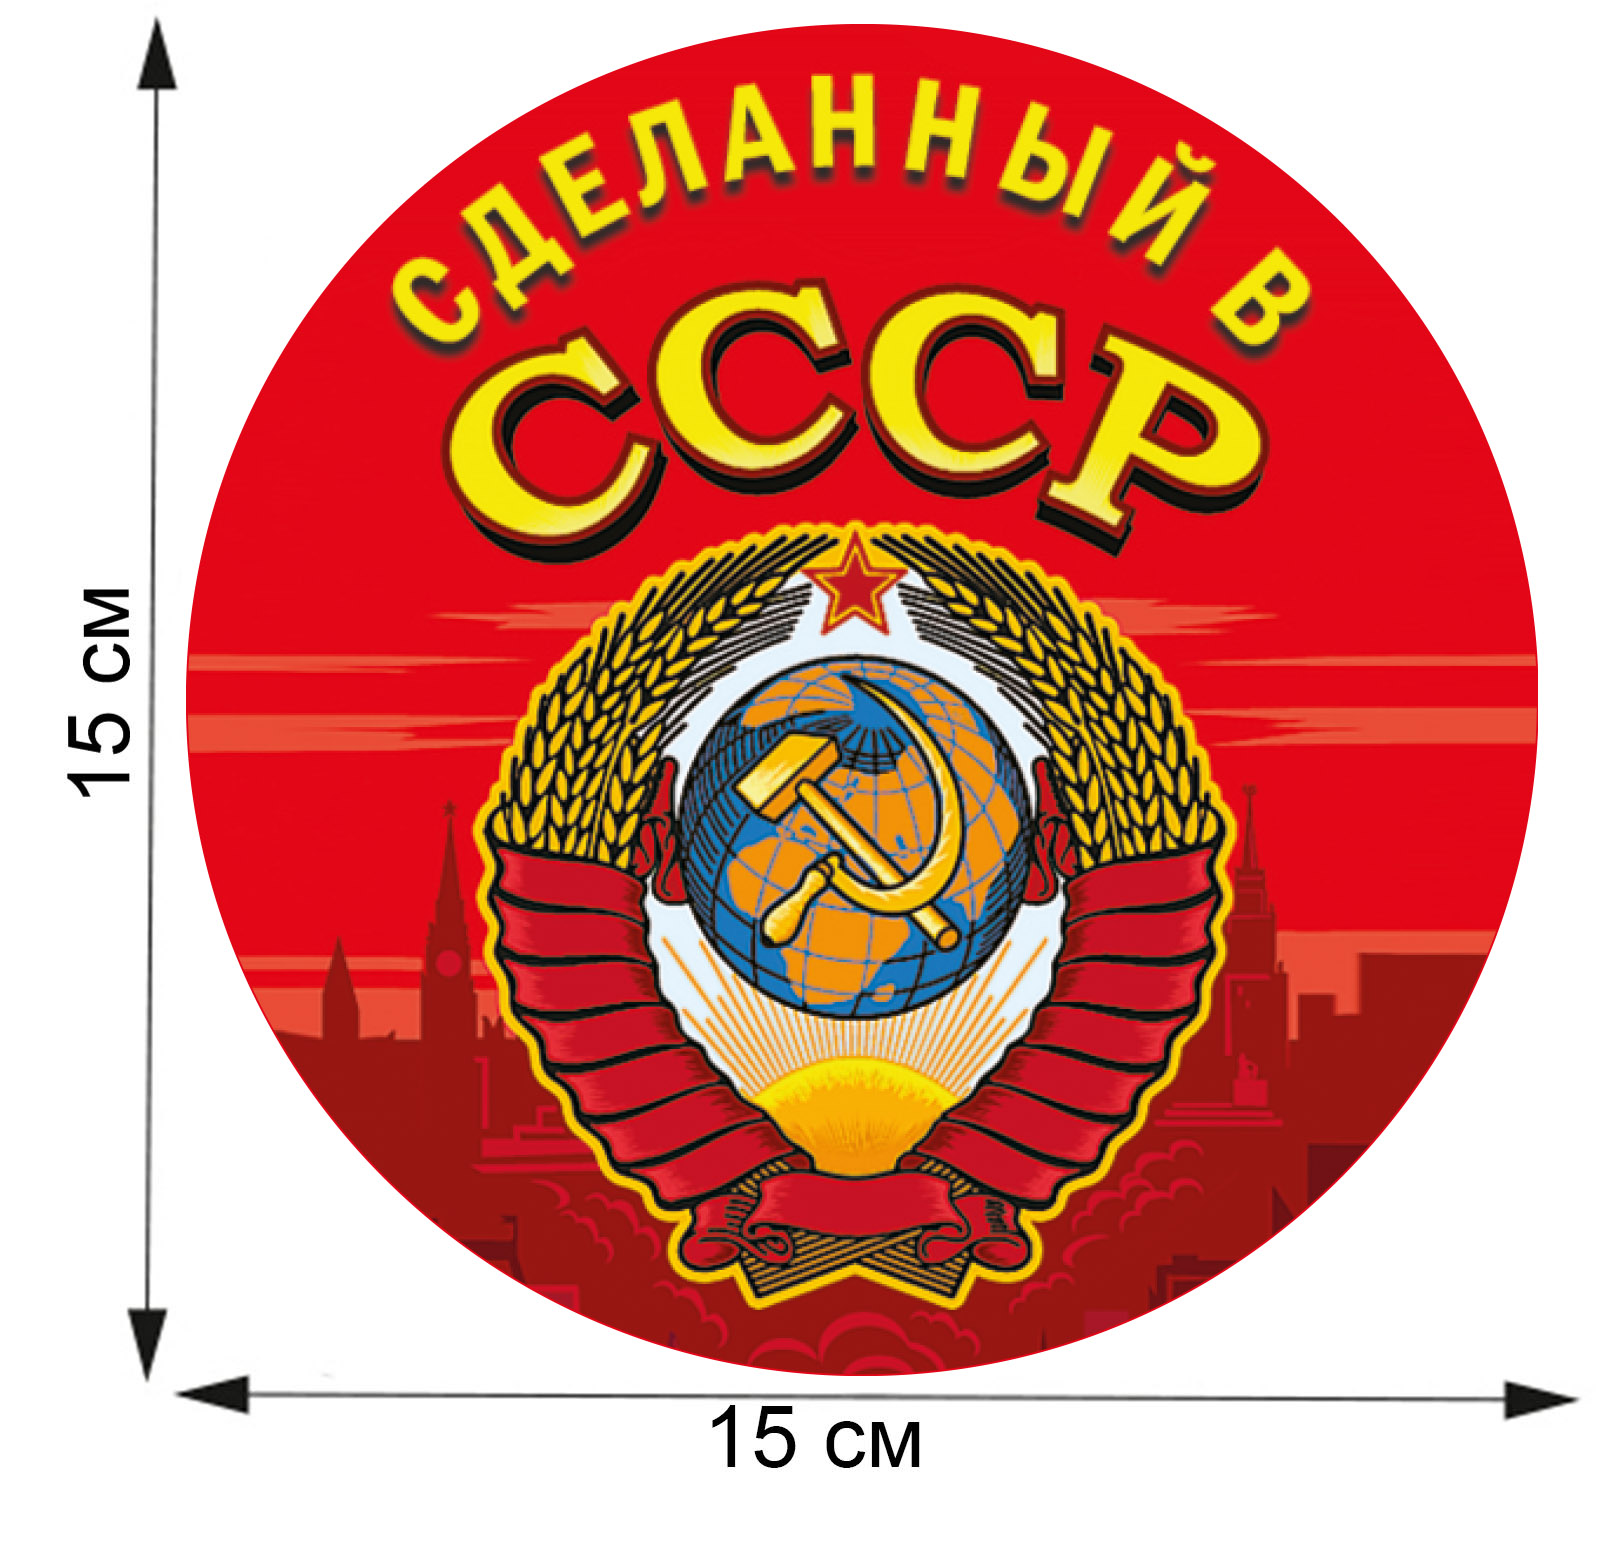 Ностальгическая сувенирная наклейка "Сделанный в СССР" по низкой цене